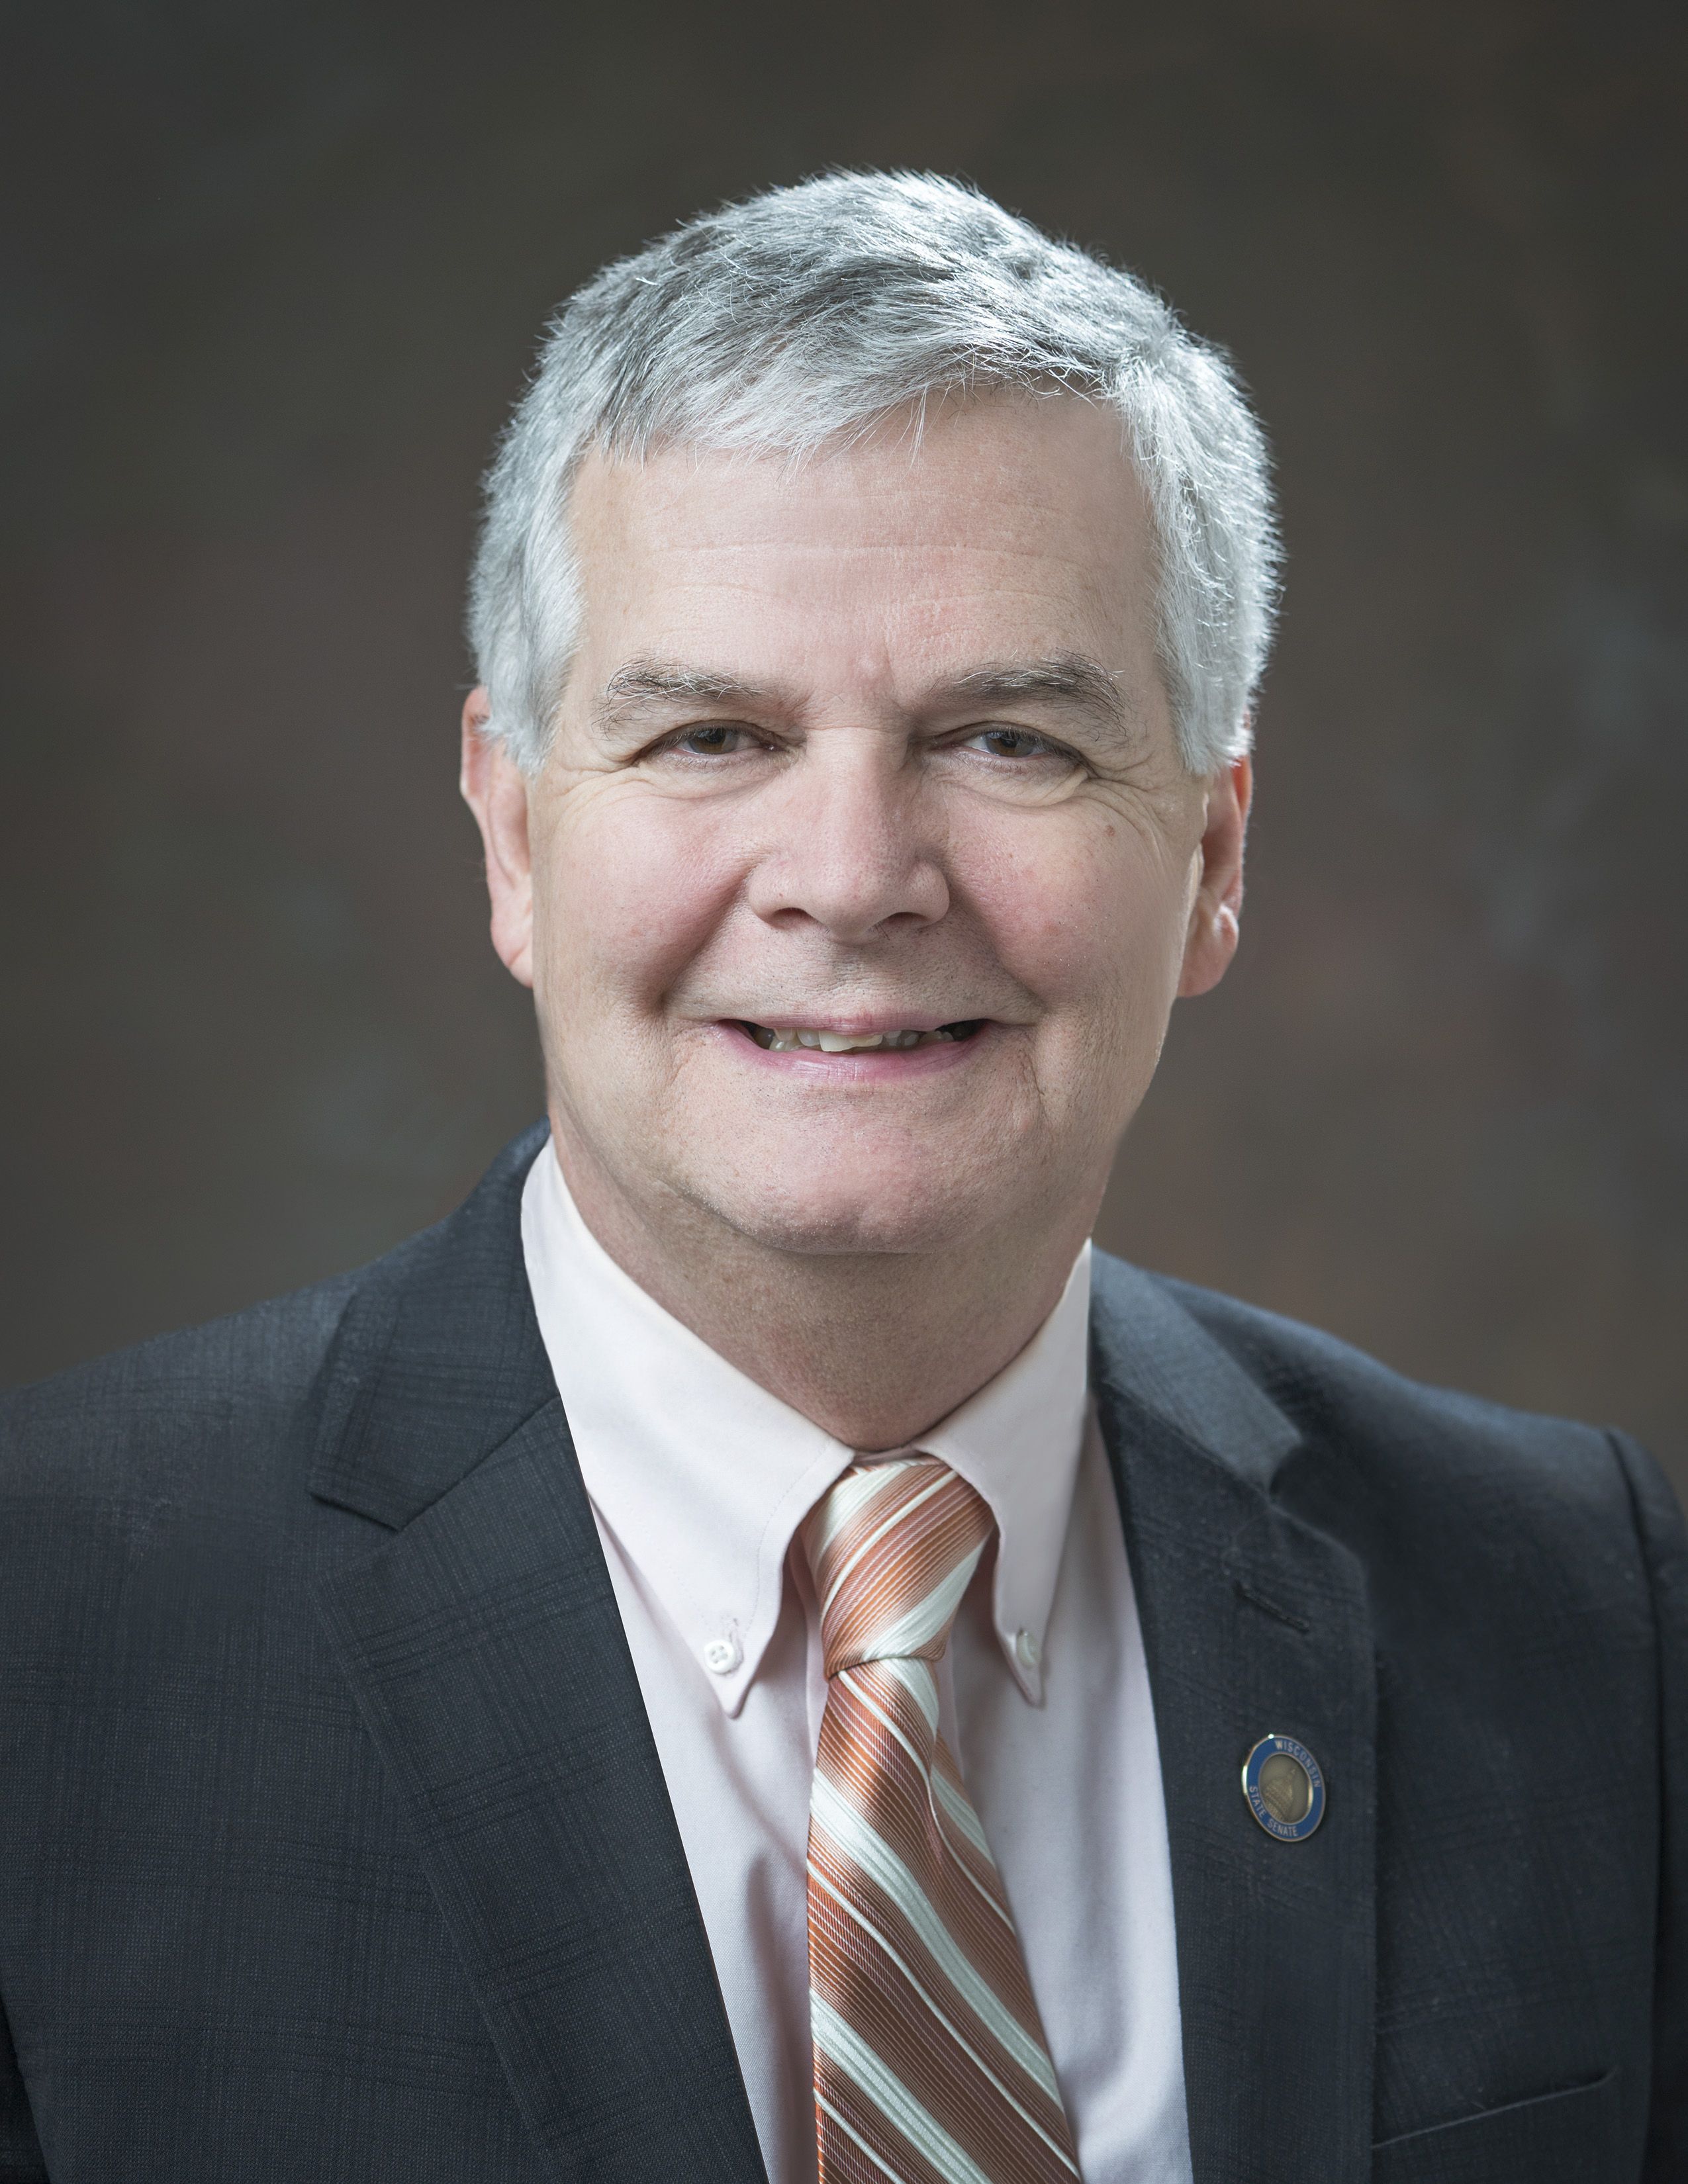 State Senator Jeff Smith